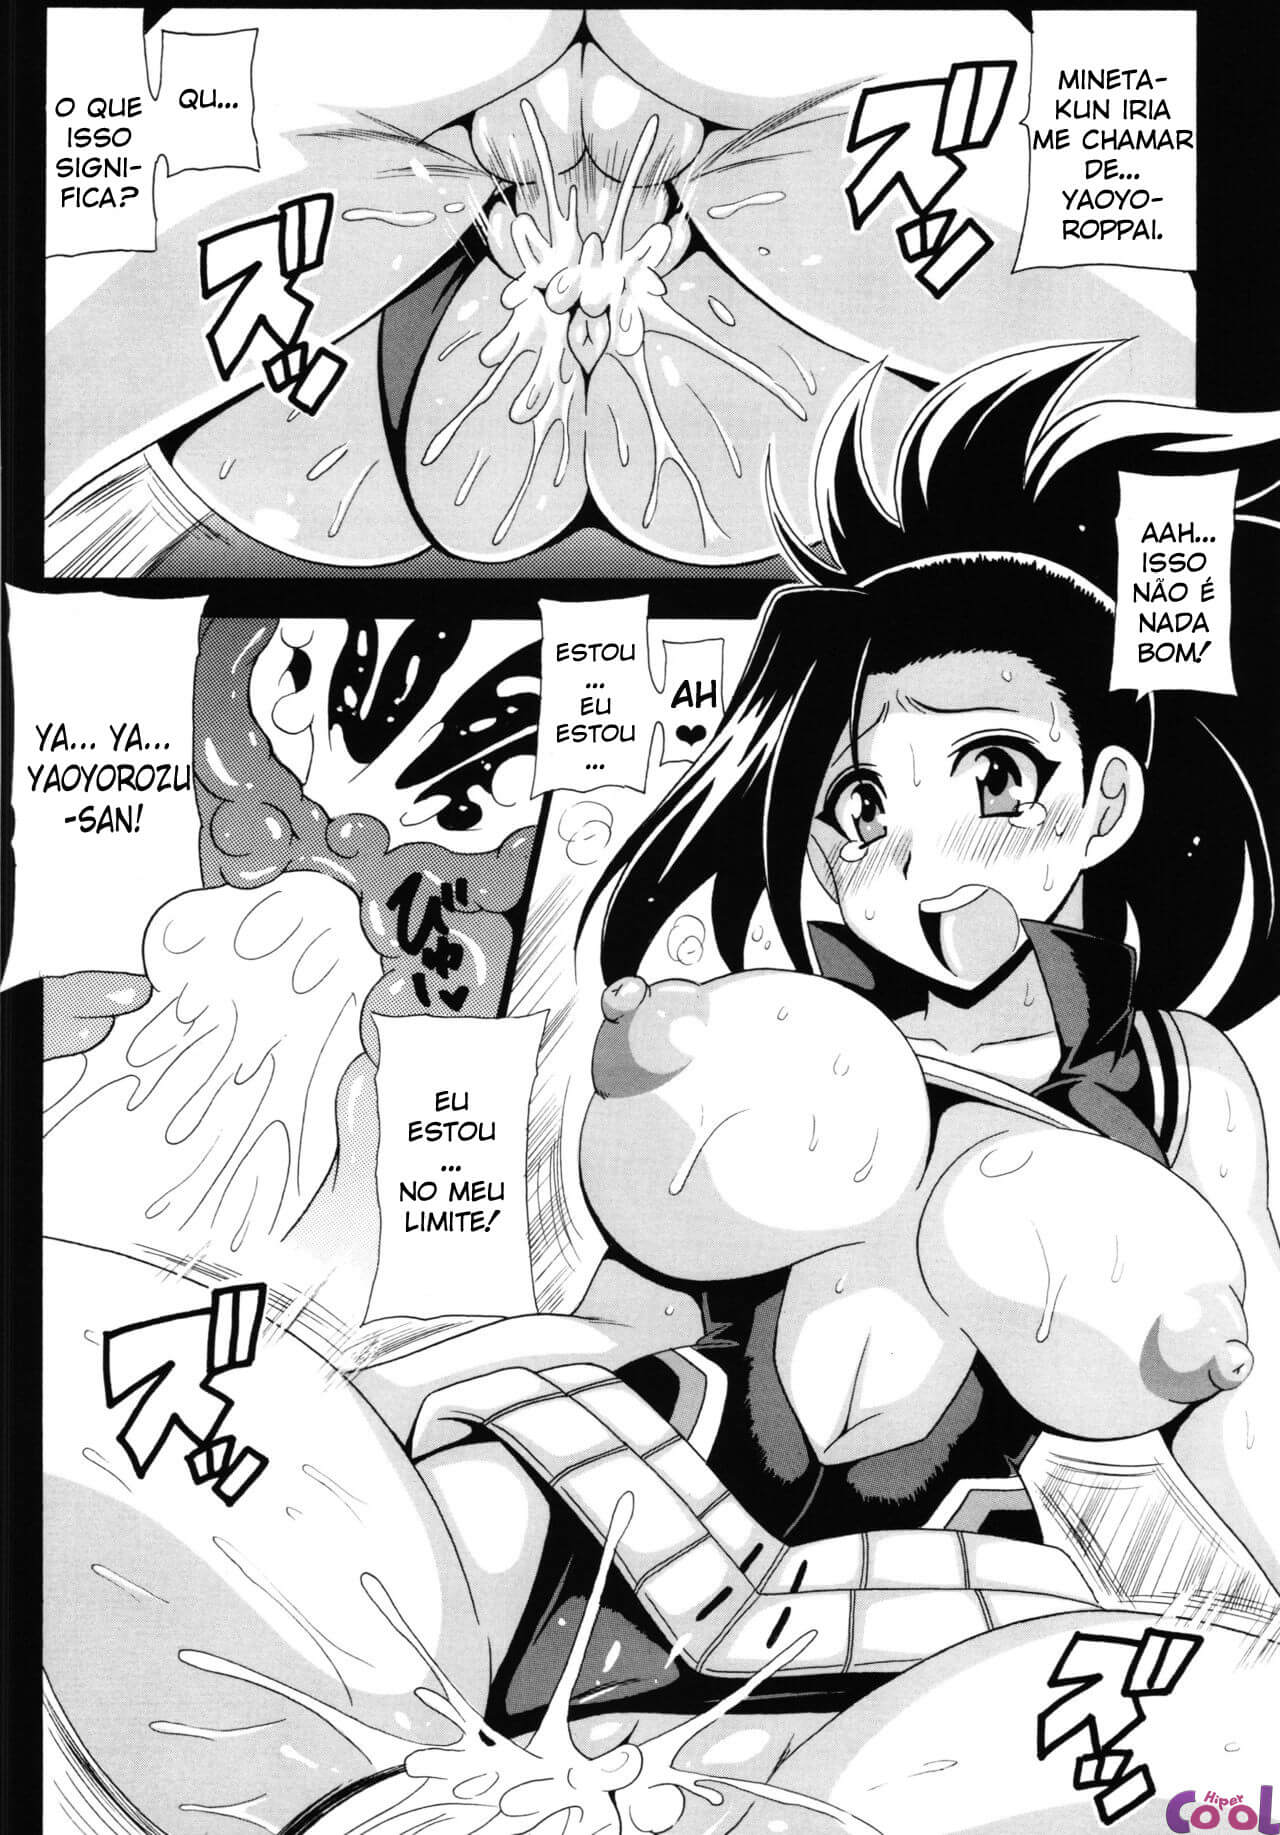 boku-no-yaoyoroppai-chapter-01-page-14.jpg